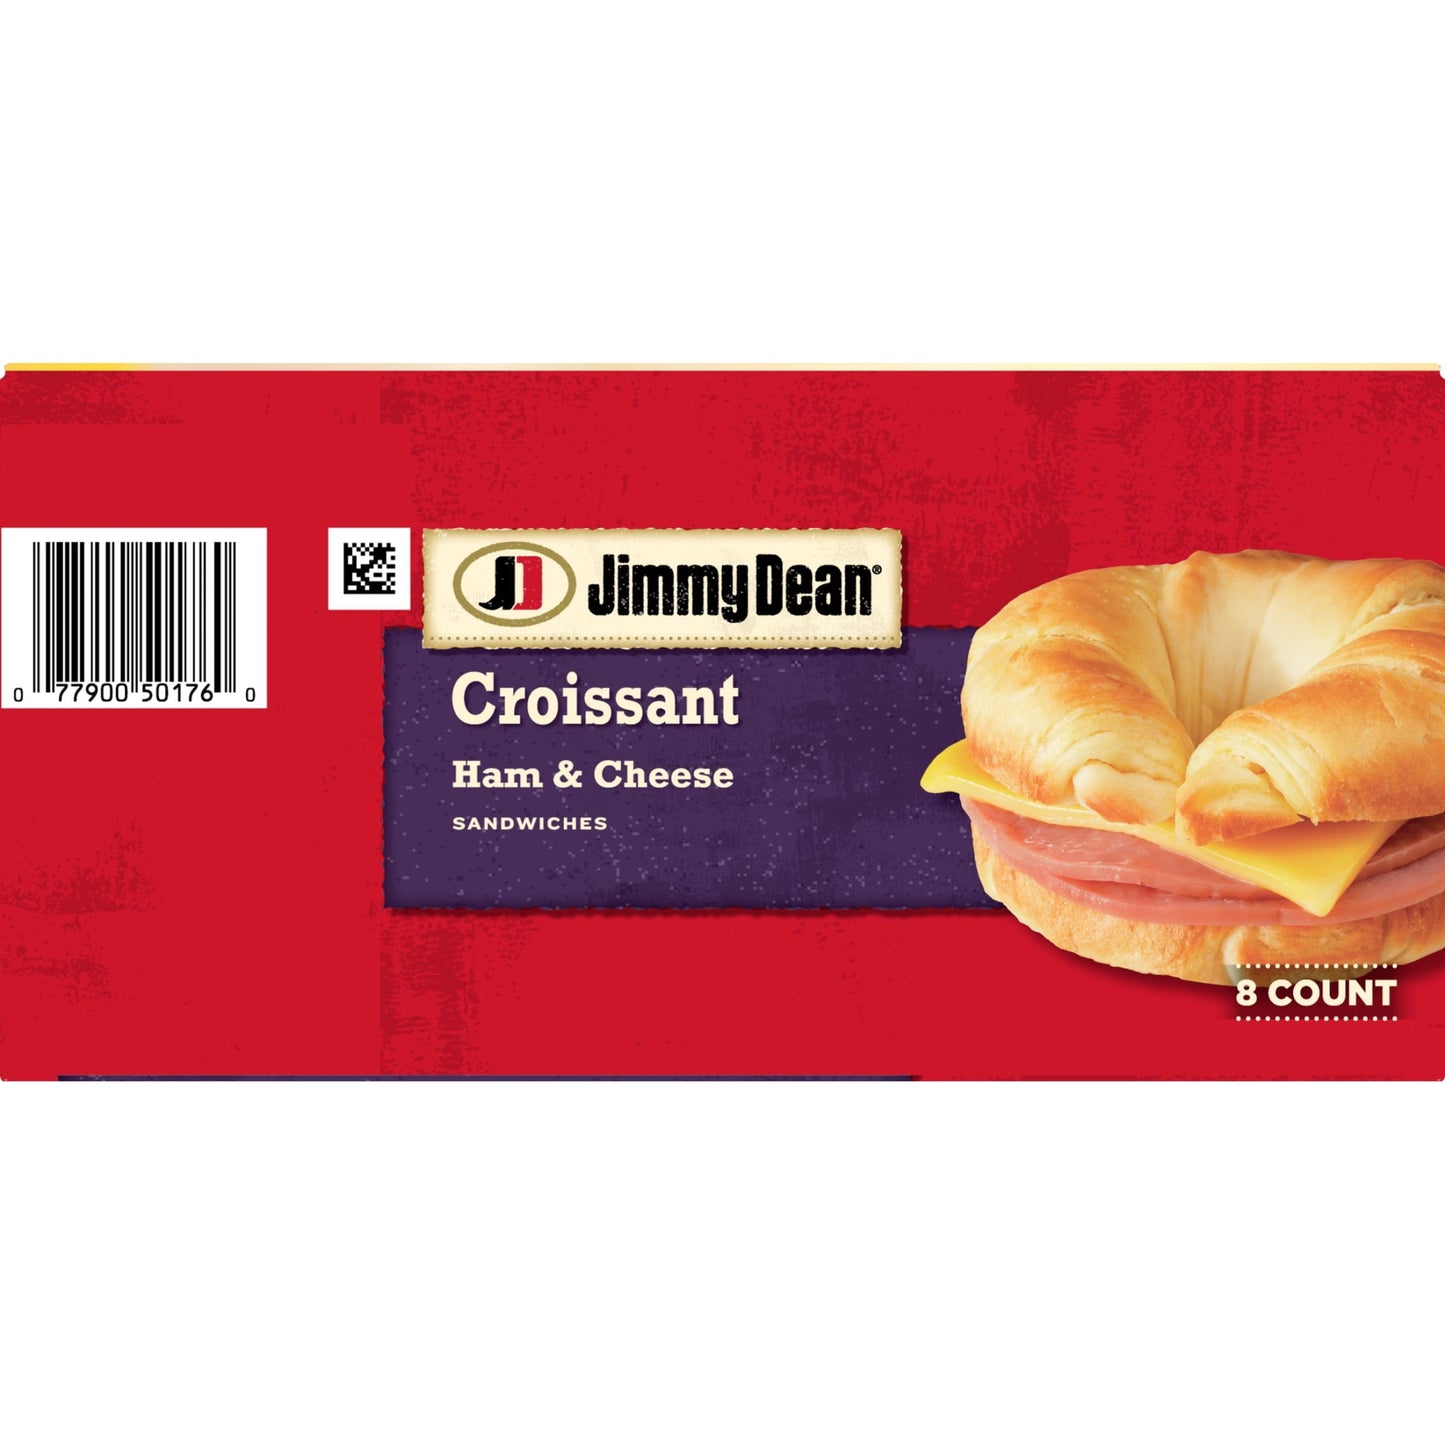 Jimmy Dean Ham & Cheese Croissant Sandwich, 27.2 oz, 8 Count (Frozen)